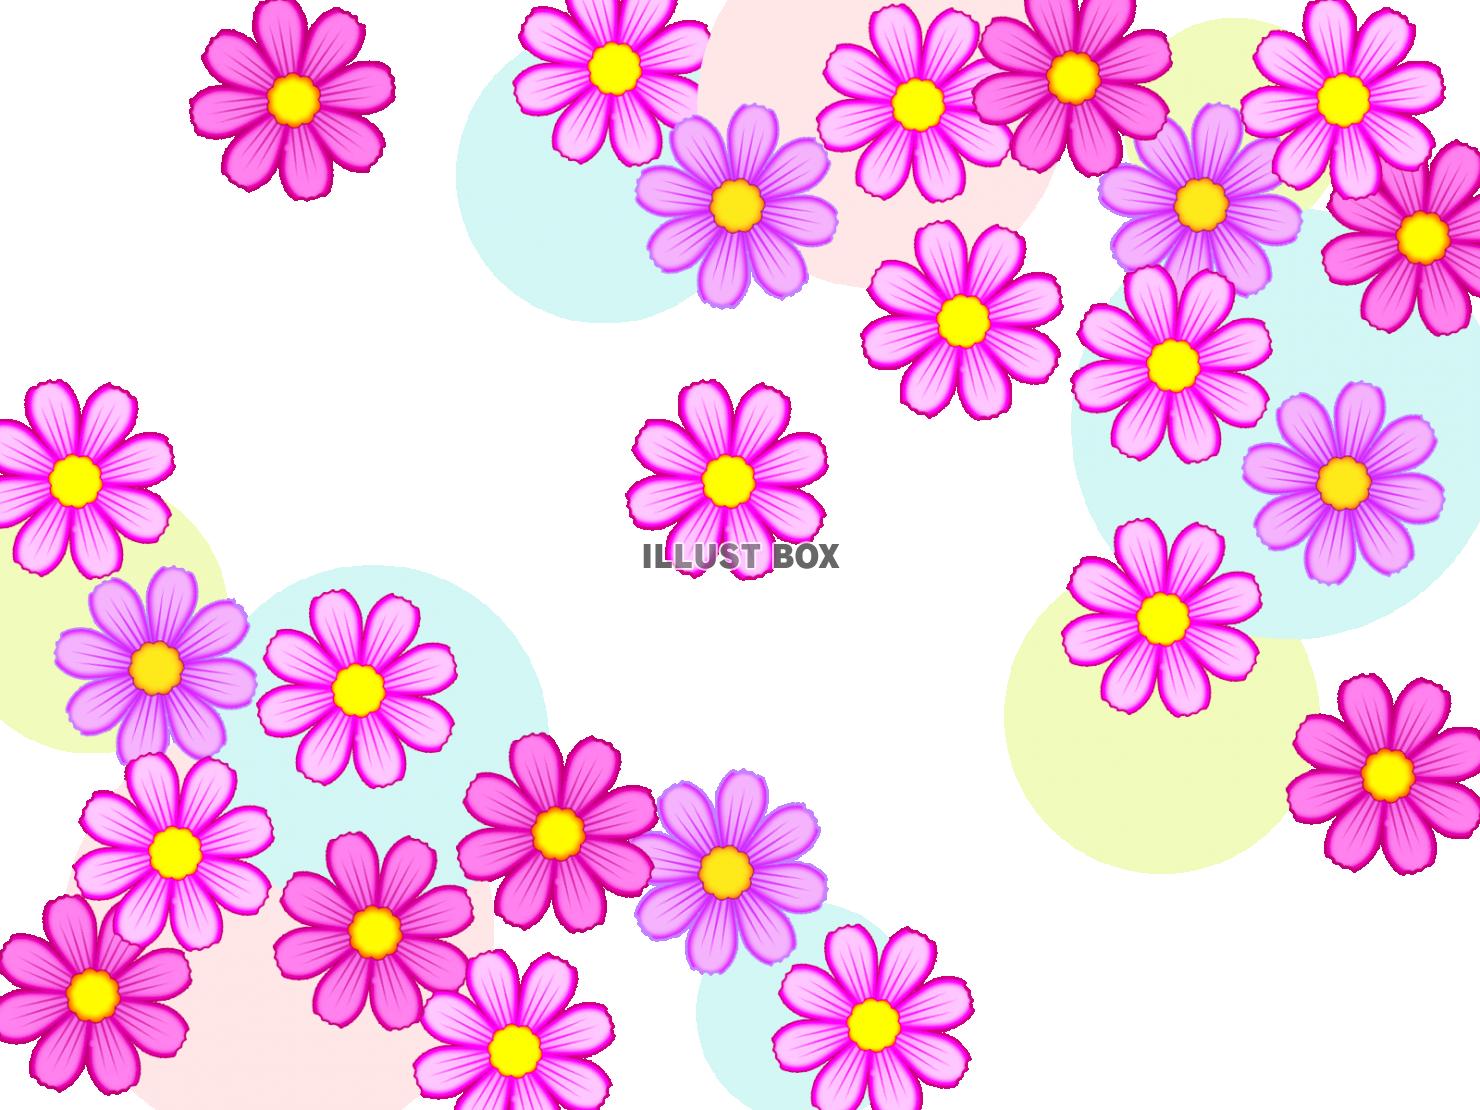 コスモスのお花模様壁紙シンプル背景素材イラスト透過png